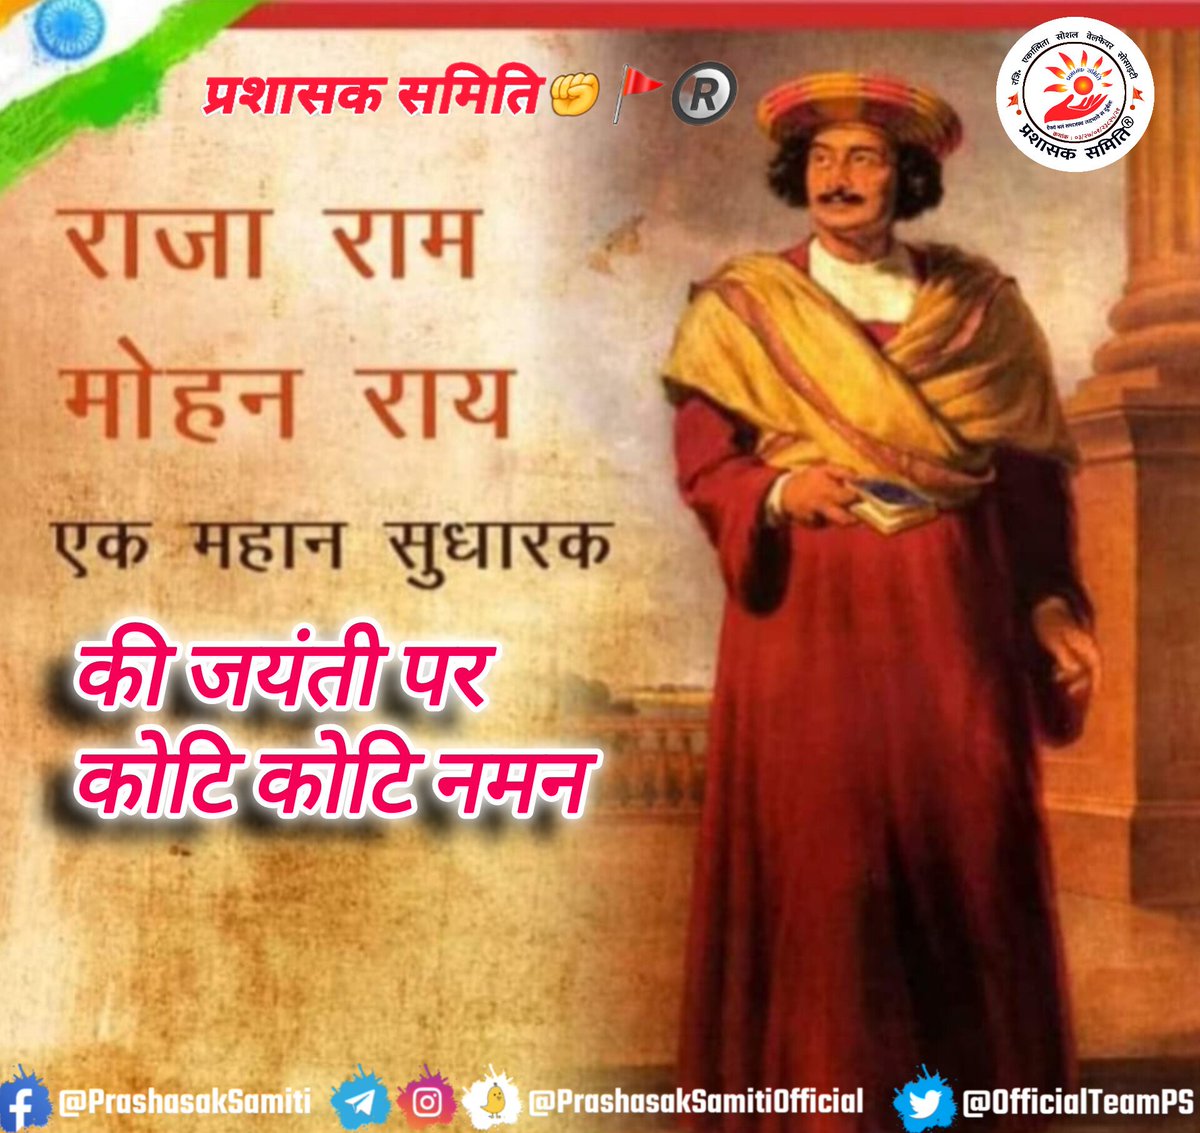 आधुनिक भारत के जनक के रुप में महान समाज सुधारक राजा राम मोहन राय जी का कार्य महत्वपूर्ण शिद्ध हुआ है। भारतीय पुनर्जागरण के अग्रदूत, वंचितों और महिलाओं के समग्र उत्थान हेतु आजीवन समर्पित रहे महान समाज सुधारक, 'ब्रह्म समाज' के संस्थापक राजा राममोहन राय की जयंती पर उन्हें विनम्र